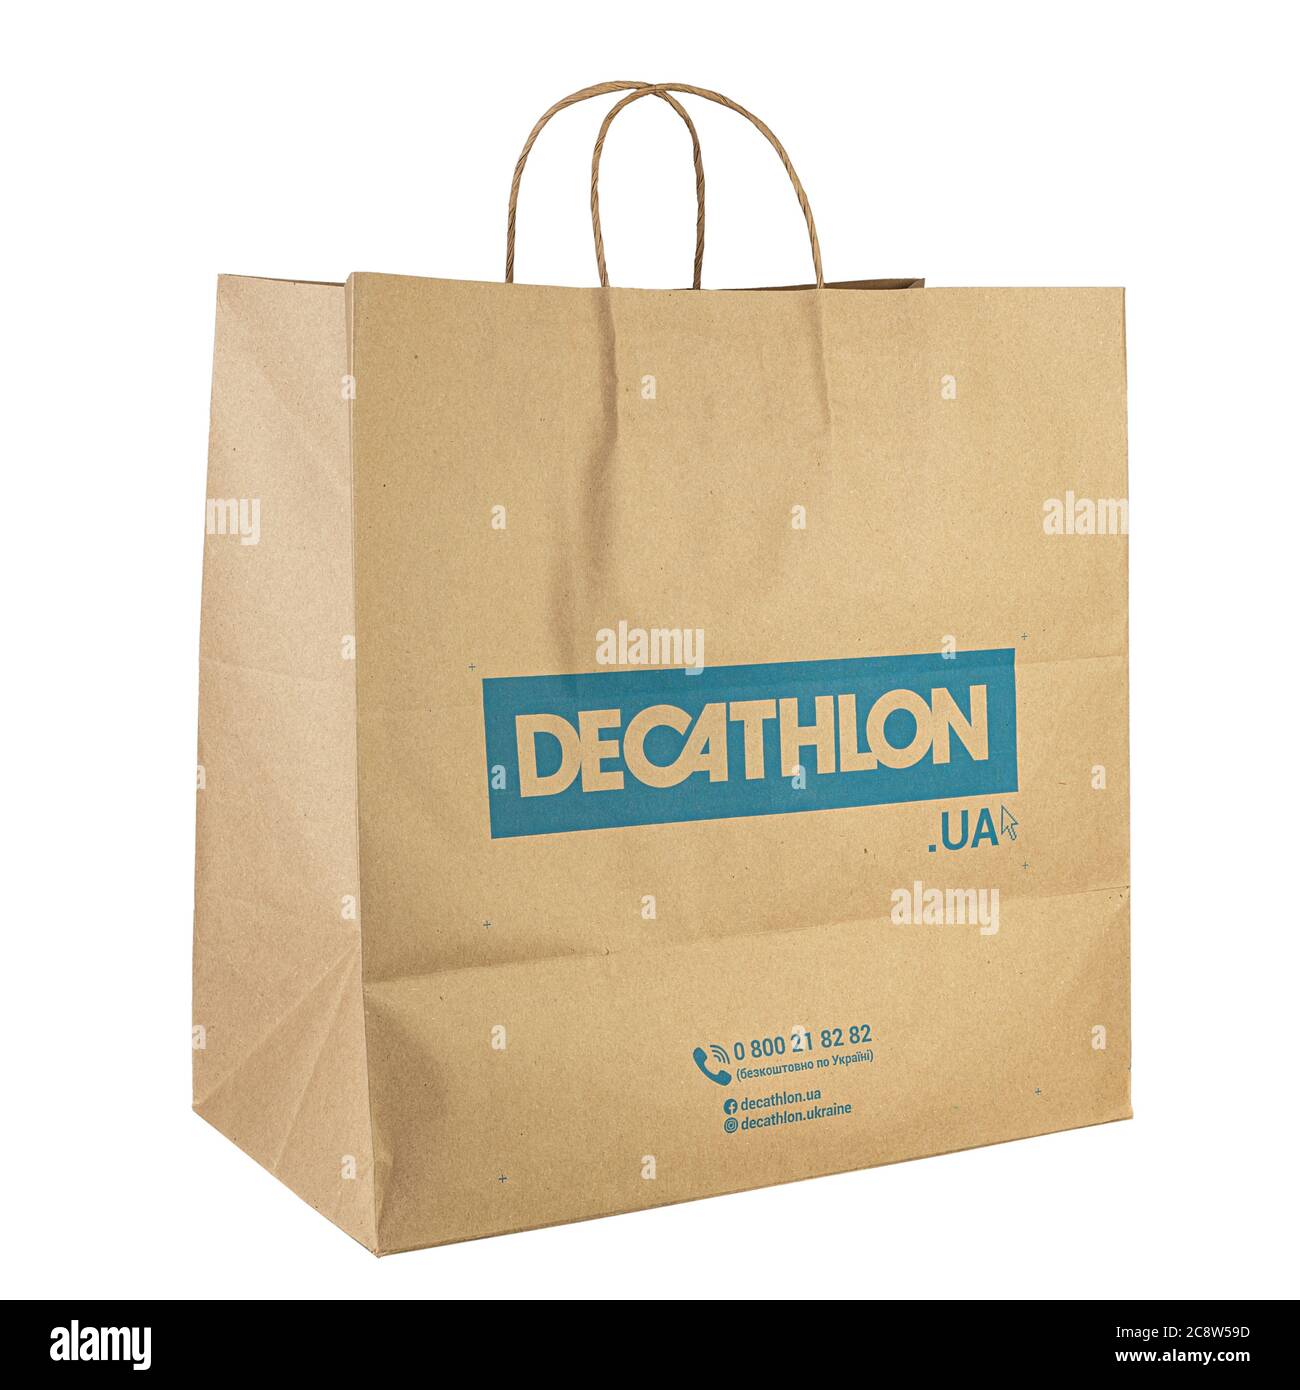 Ucraina, Kiev - Jule 17. 2020: Sacchetto di carta del marchio Decathlon.  Decathlon è un'azienda francese e uno dei più grandi rivenditori di  articoli sportivi al mondo. File Foto stock - Alamy